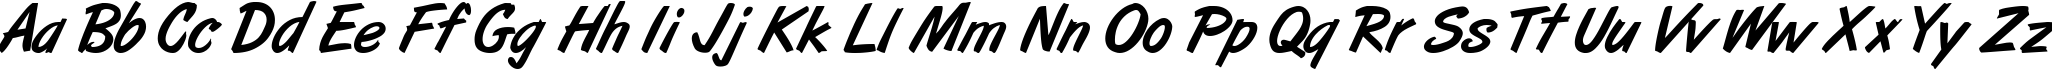 Пример написания английского алфавита шрифтом ArtBrush Medium